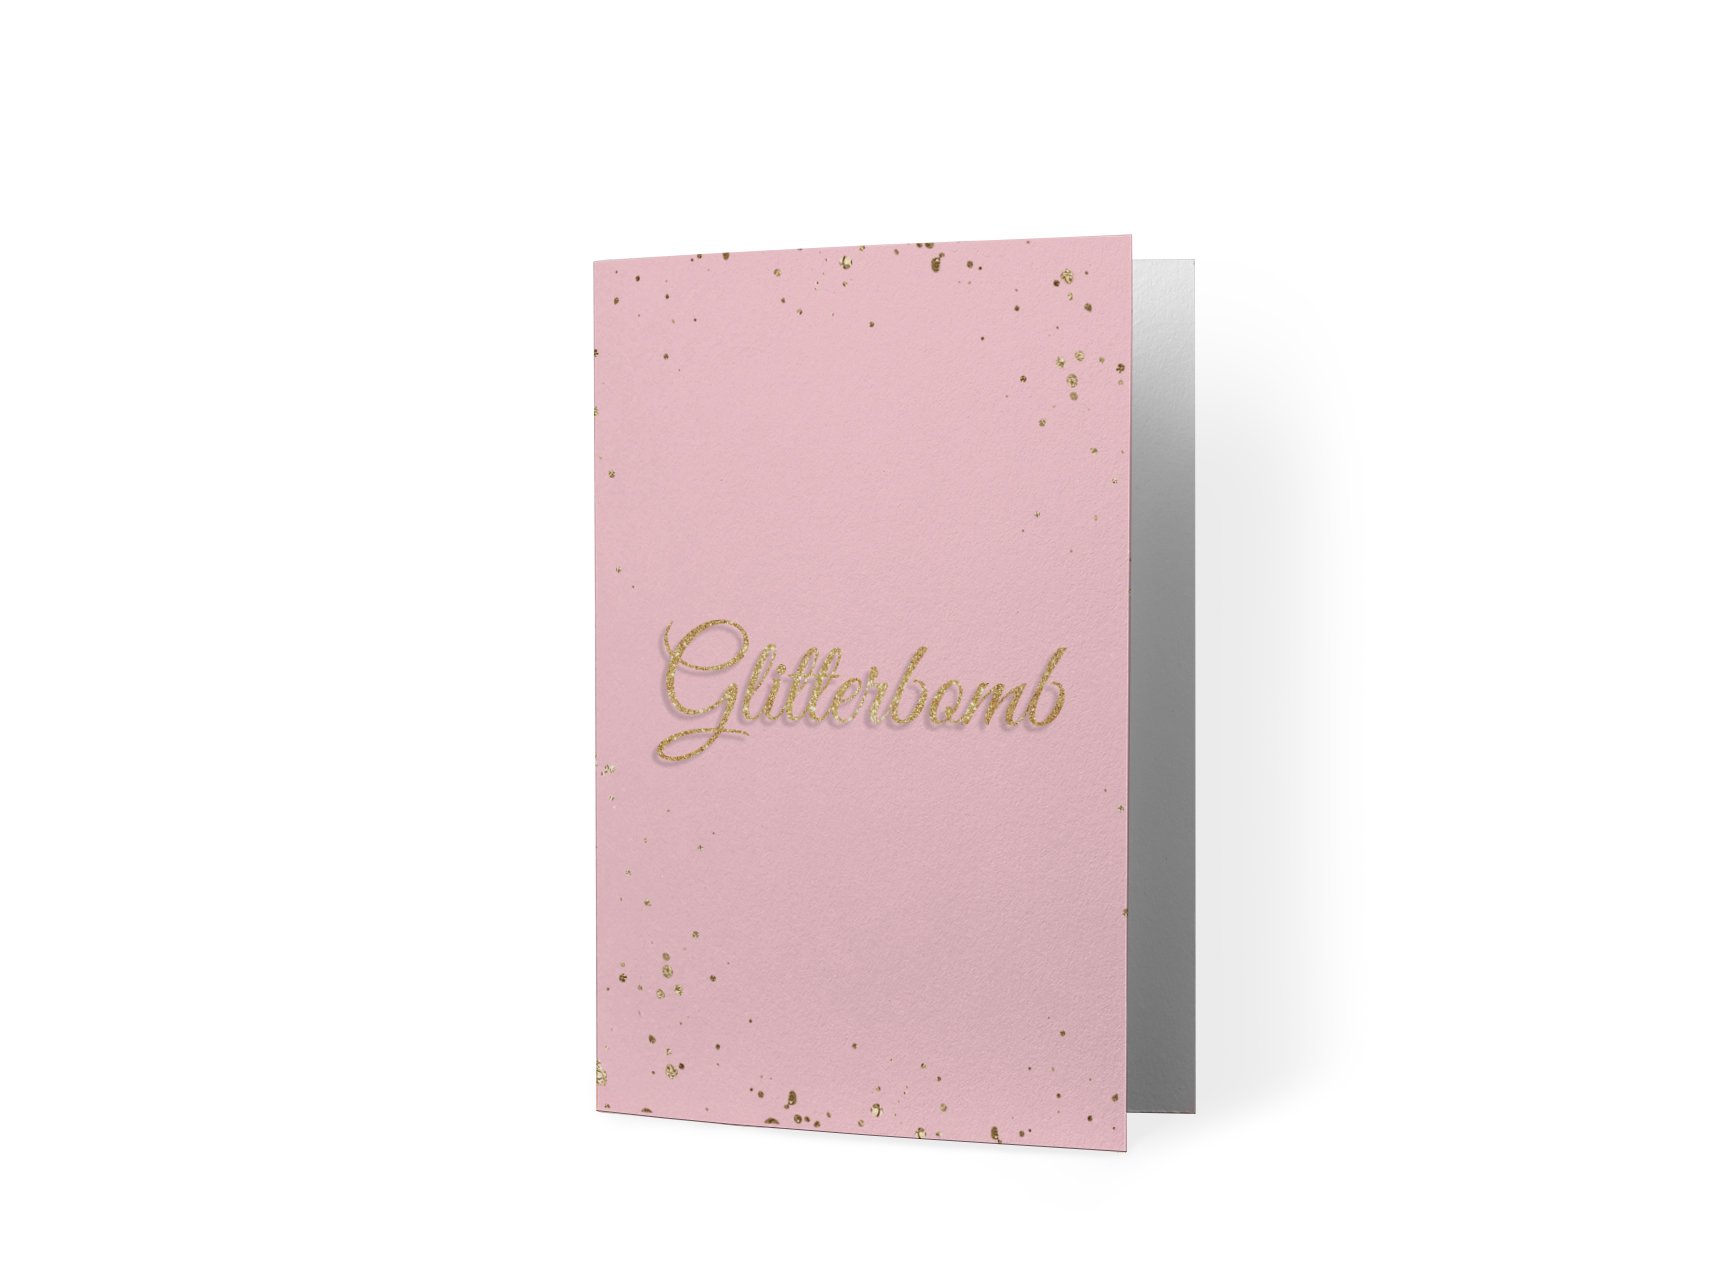 Glitterbomb - TSWM Gift Card Mockup.jpg